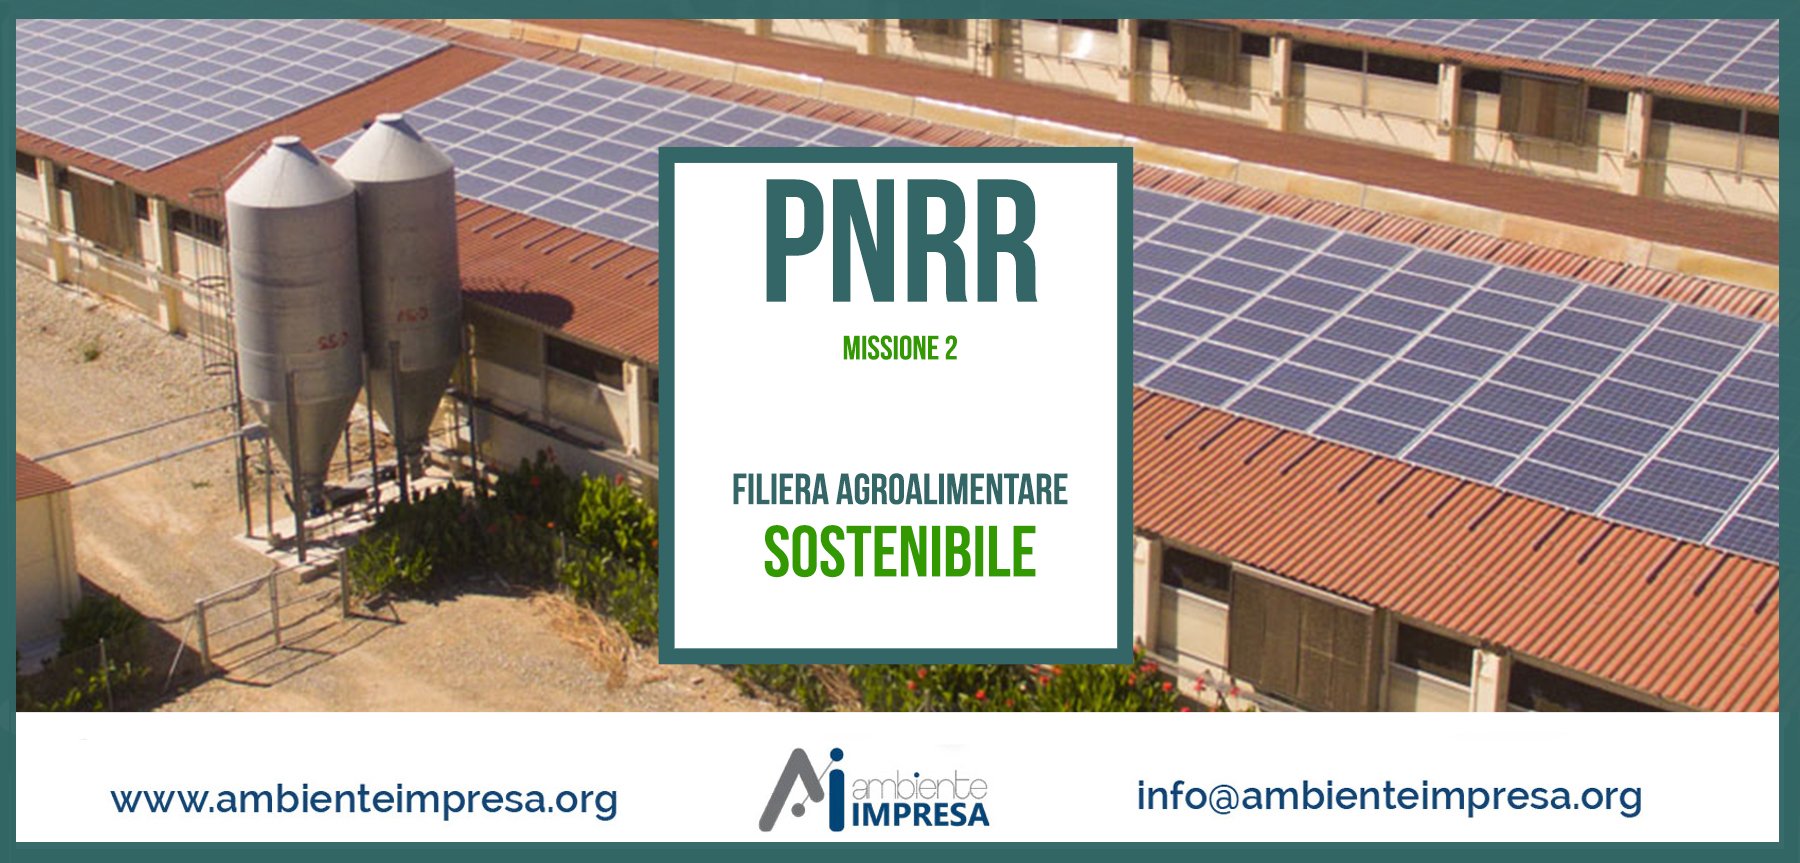 PNRR - MISSIONE 2 -FILIERA AGROALIMENTARE SOSTENIBILE - Ambiente Impresa srl - Cagliari